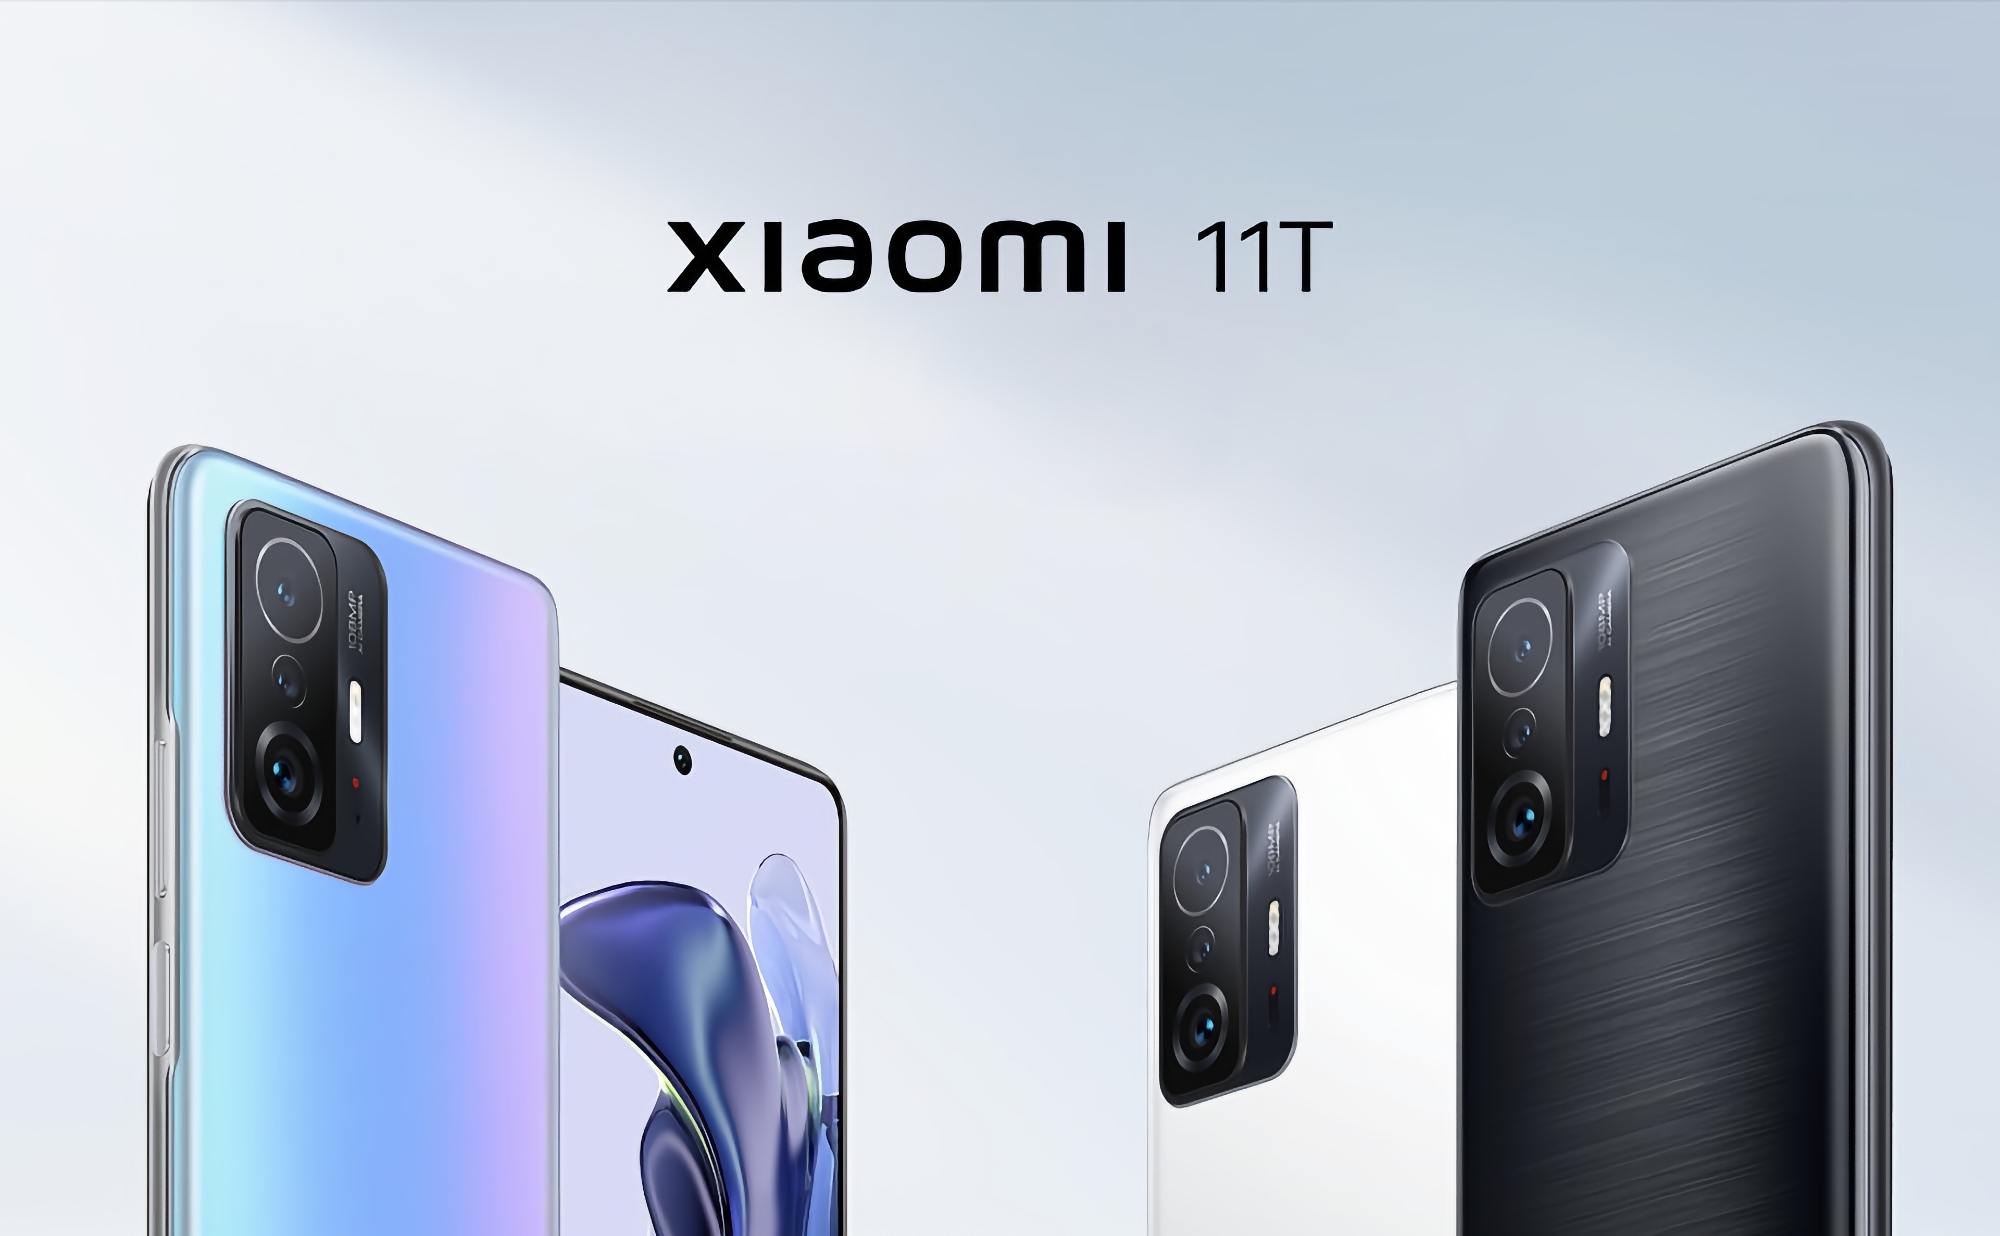 Xiaomi 11T: Smartphone mit MediaTek Dimensity 1200-Ultra Prozessor, 108 MP Kamera, 5000 mAh Akku und Preis ab $449 